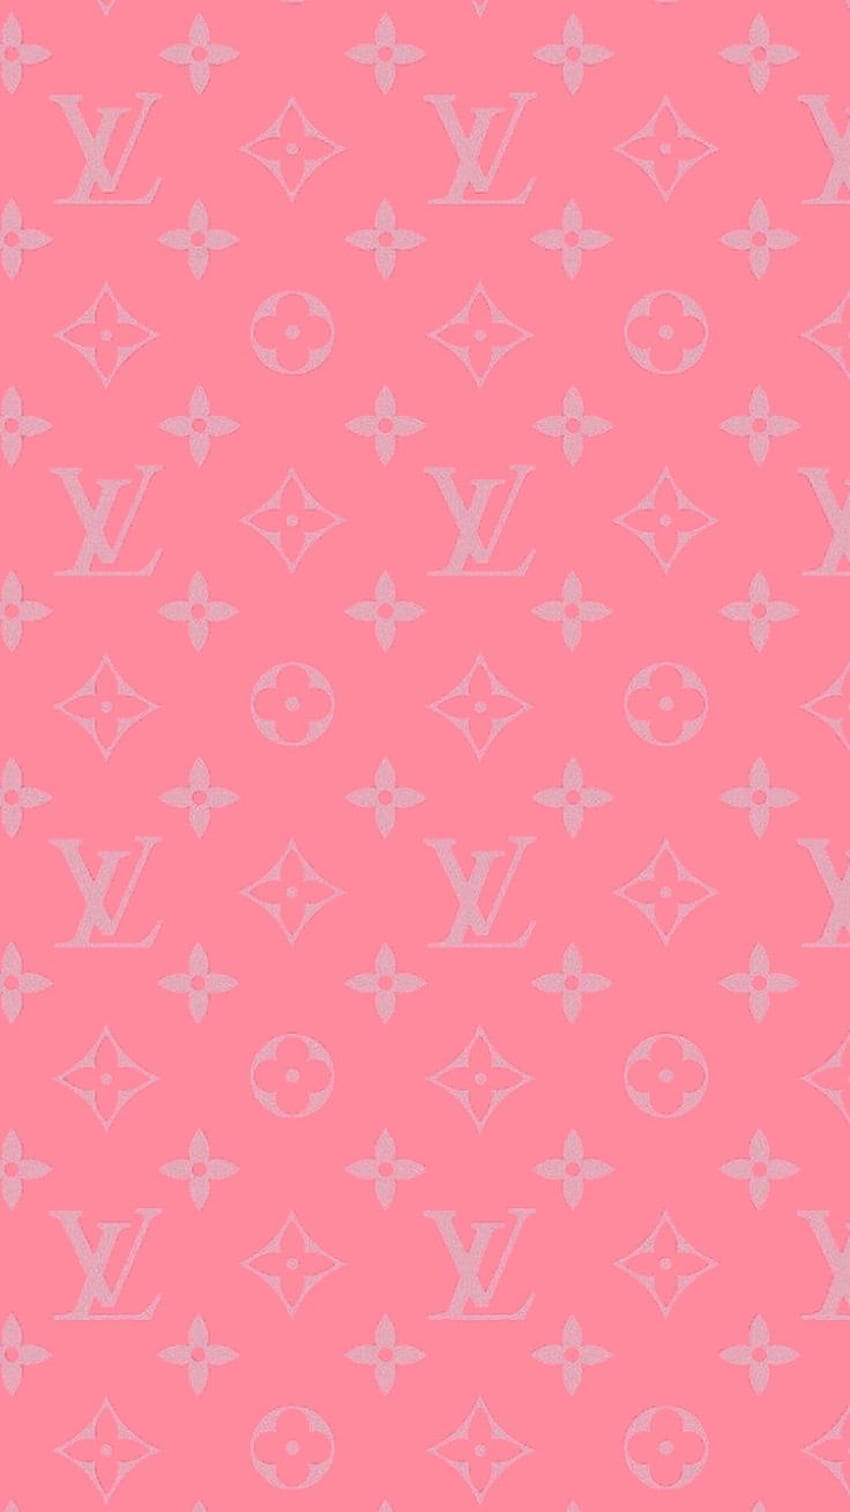 Tìm kiếm một hình nền đẹp và độc đáo cho điện thoại của bạn? Hình nền iPhone Louis Vuitton hồng sẽ khiến bạn phải trầm trồ bởi những chi tiết bắt mắt. Với gam màu hồng phấn và những ký hiệu LV đặc trưng, bạn sẽ cảm thấy tự hào khi sử dụng hình nền này.